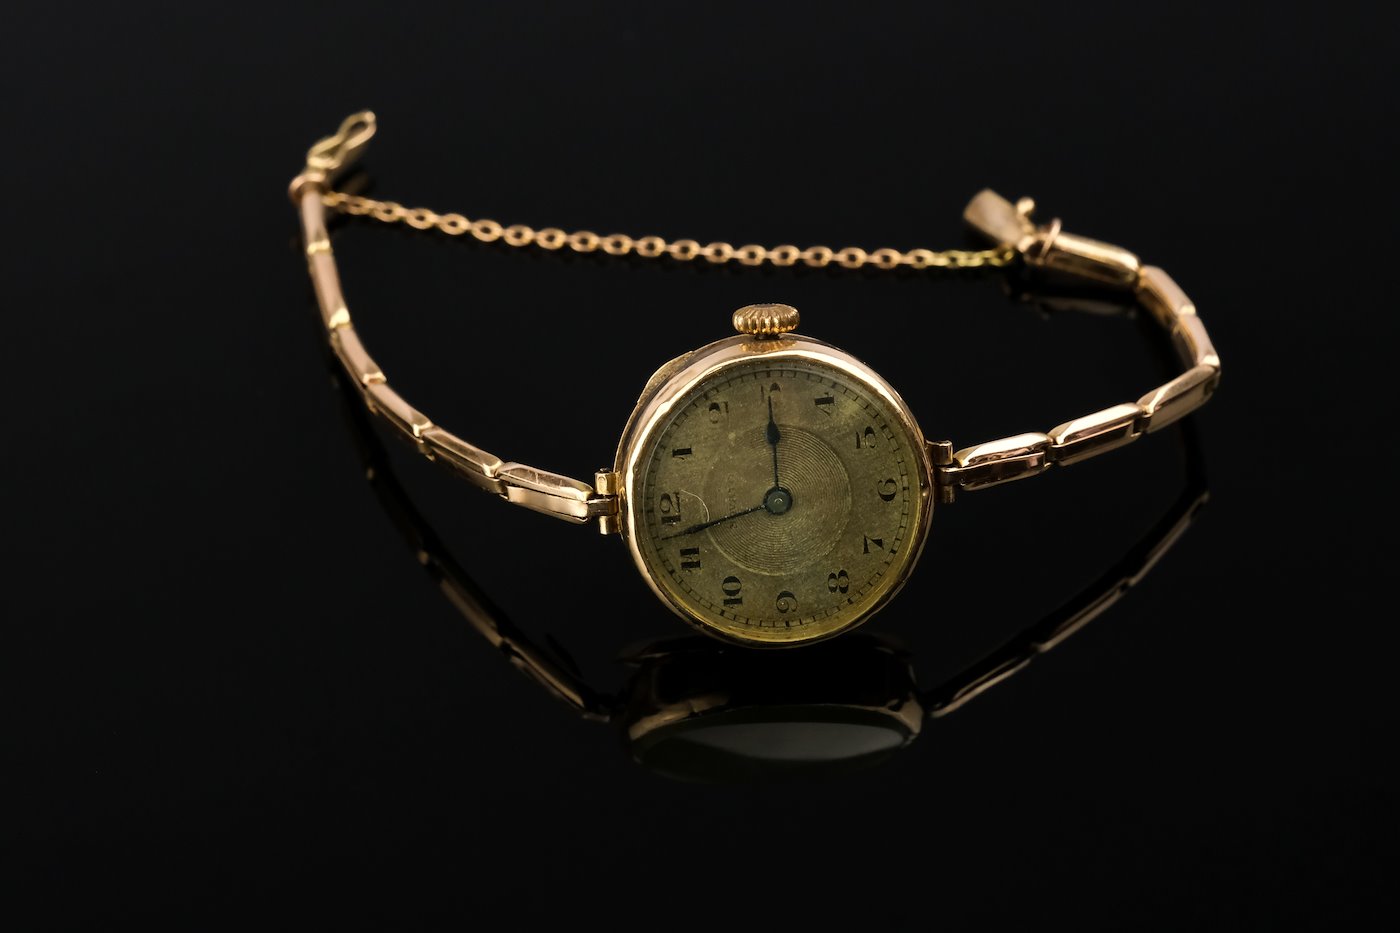 .. - Dámské náramkové hodinky značky Novato, zlato 585/1000, značeno platnou starou značkou "harfa", hrubá hmotnost 15,25 g